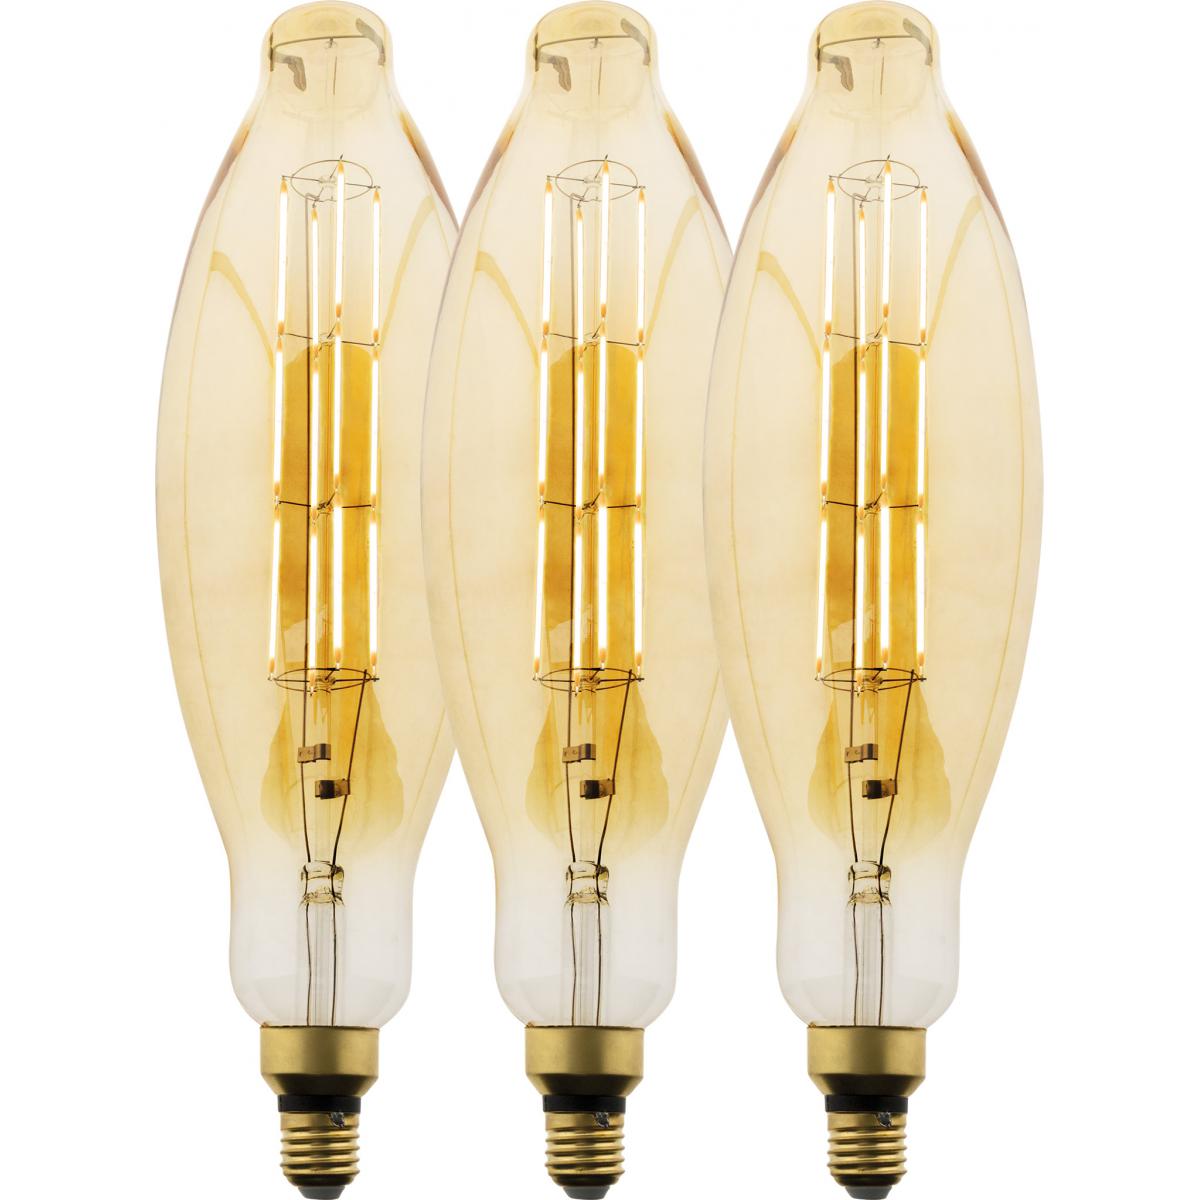 Elexity - Lot de 3 ampoules LED Filament Géante Tube - 5W E27 350lm 2500K (Blanc chaud) - Ampoules LED